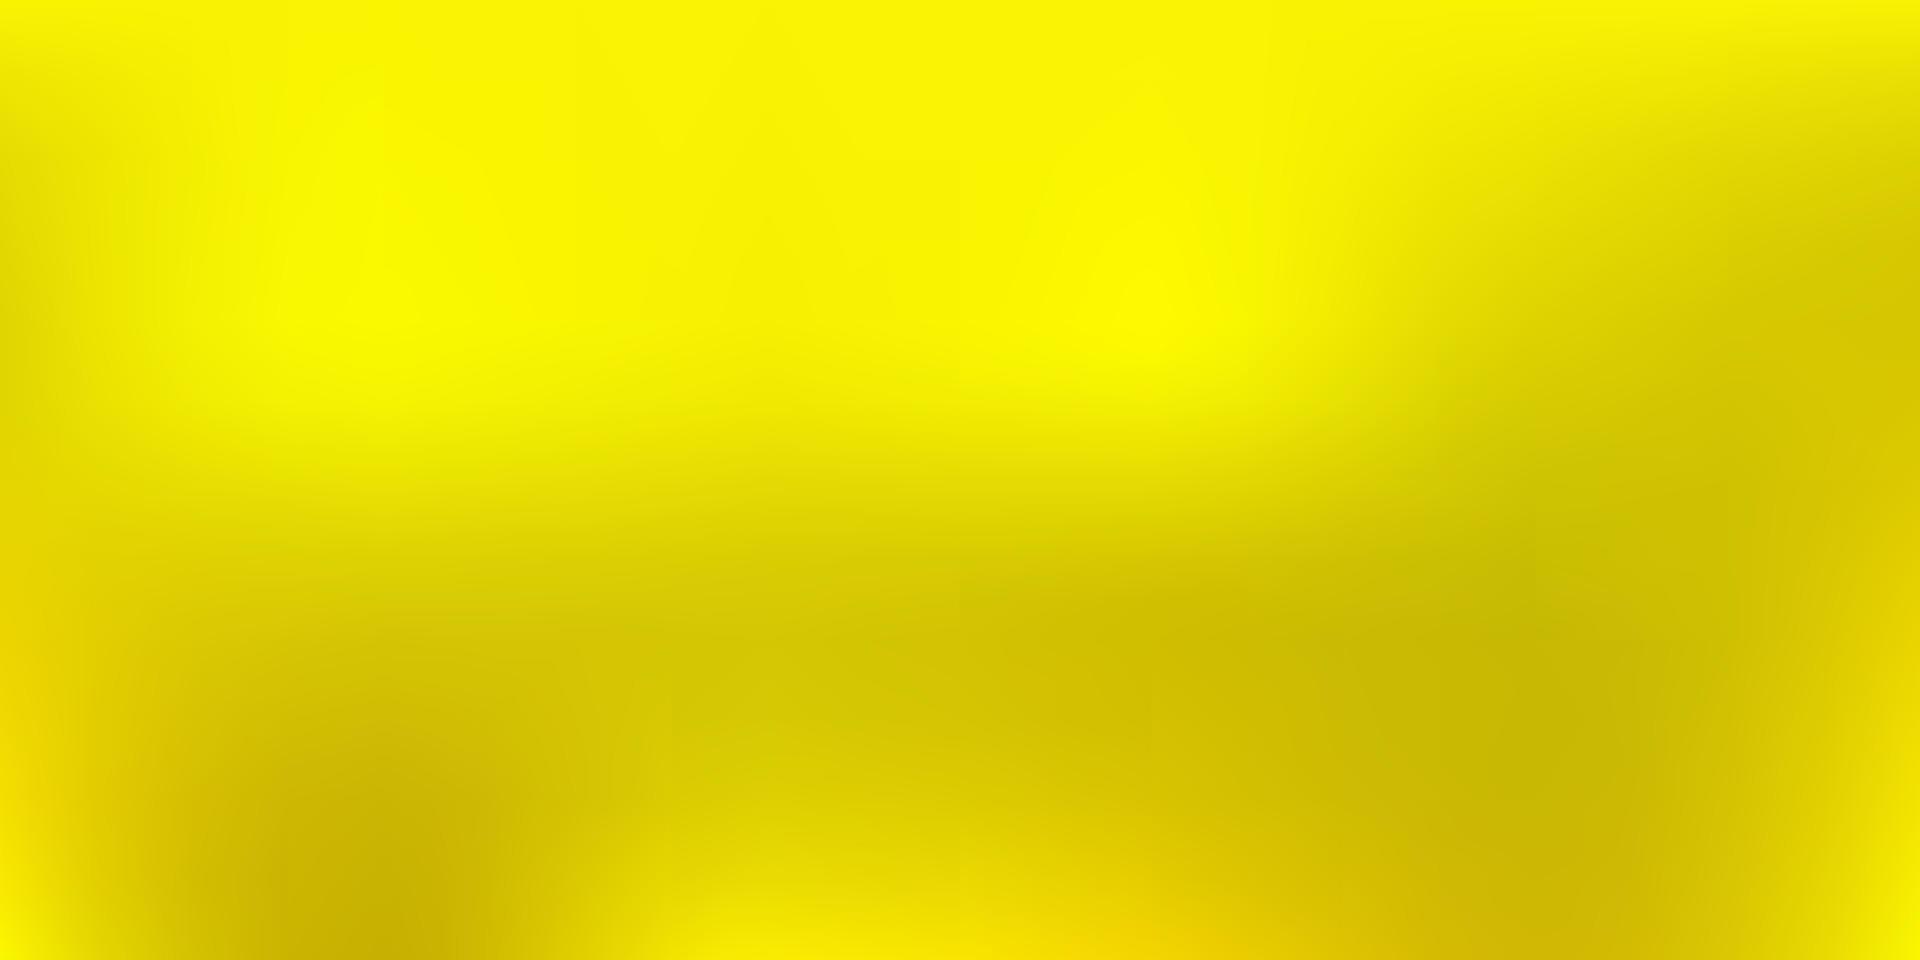 vert foncé, texture de flou abstrait vecteur jaune.